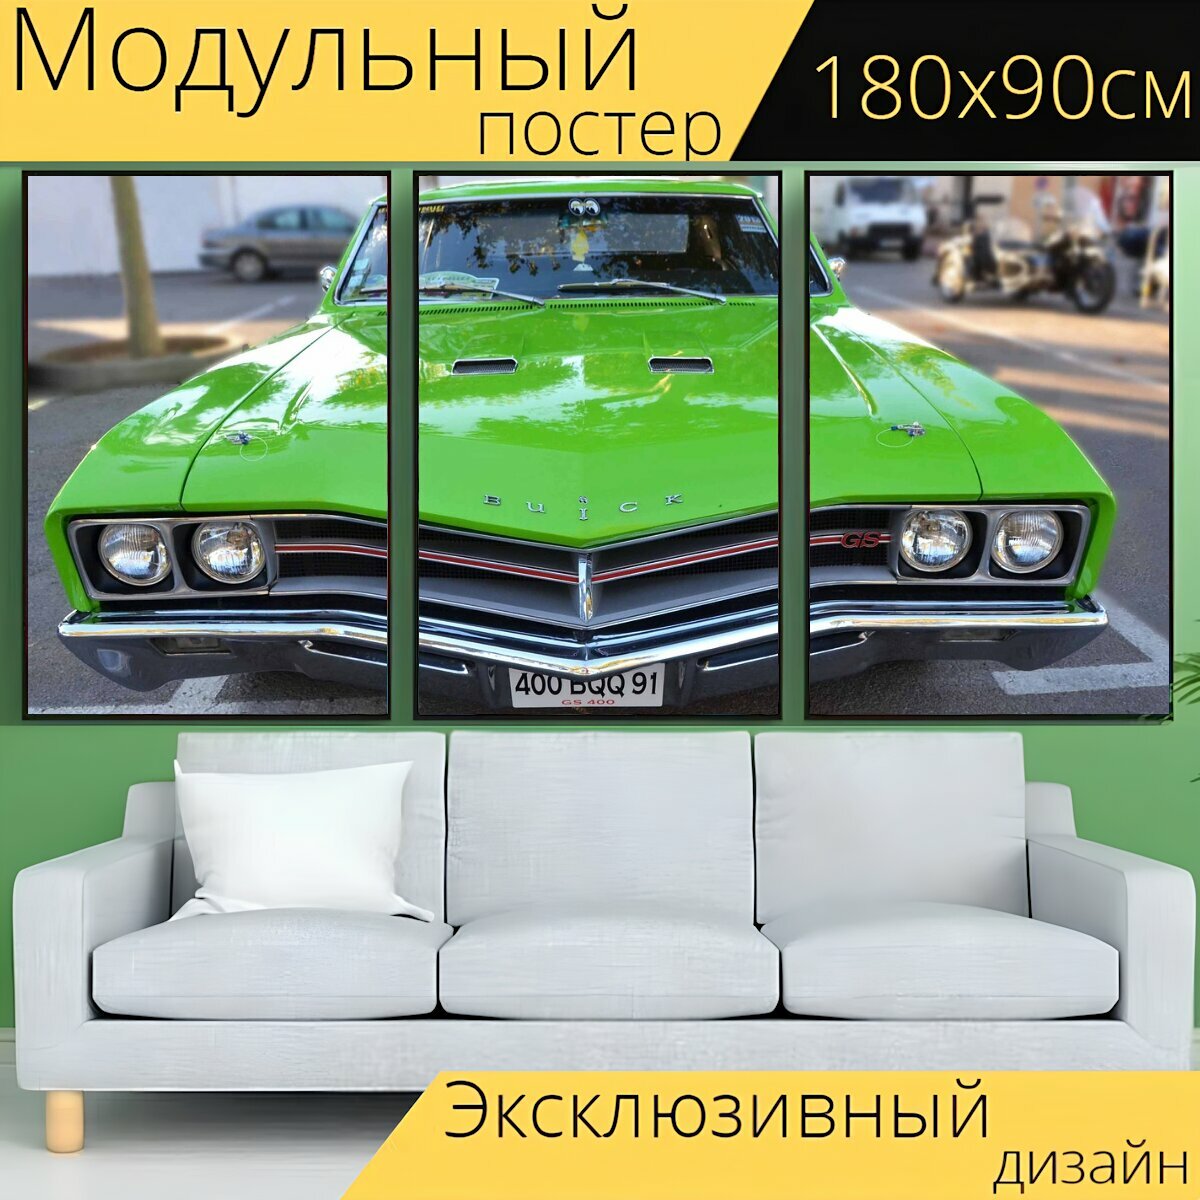 Модульный постер "Автомобиль, транспортное средство, транспорт" 180 x 90 см. для интерьера